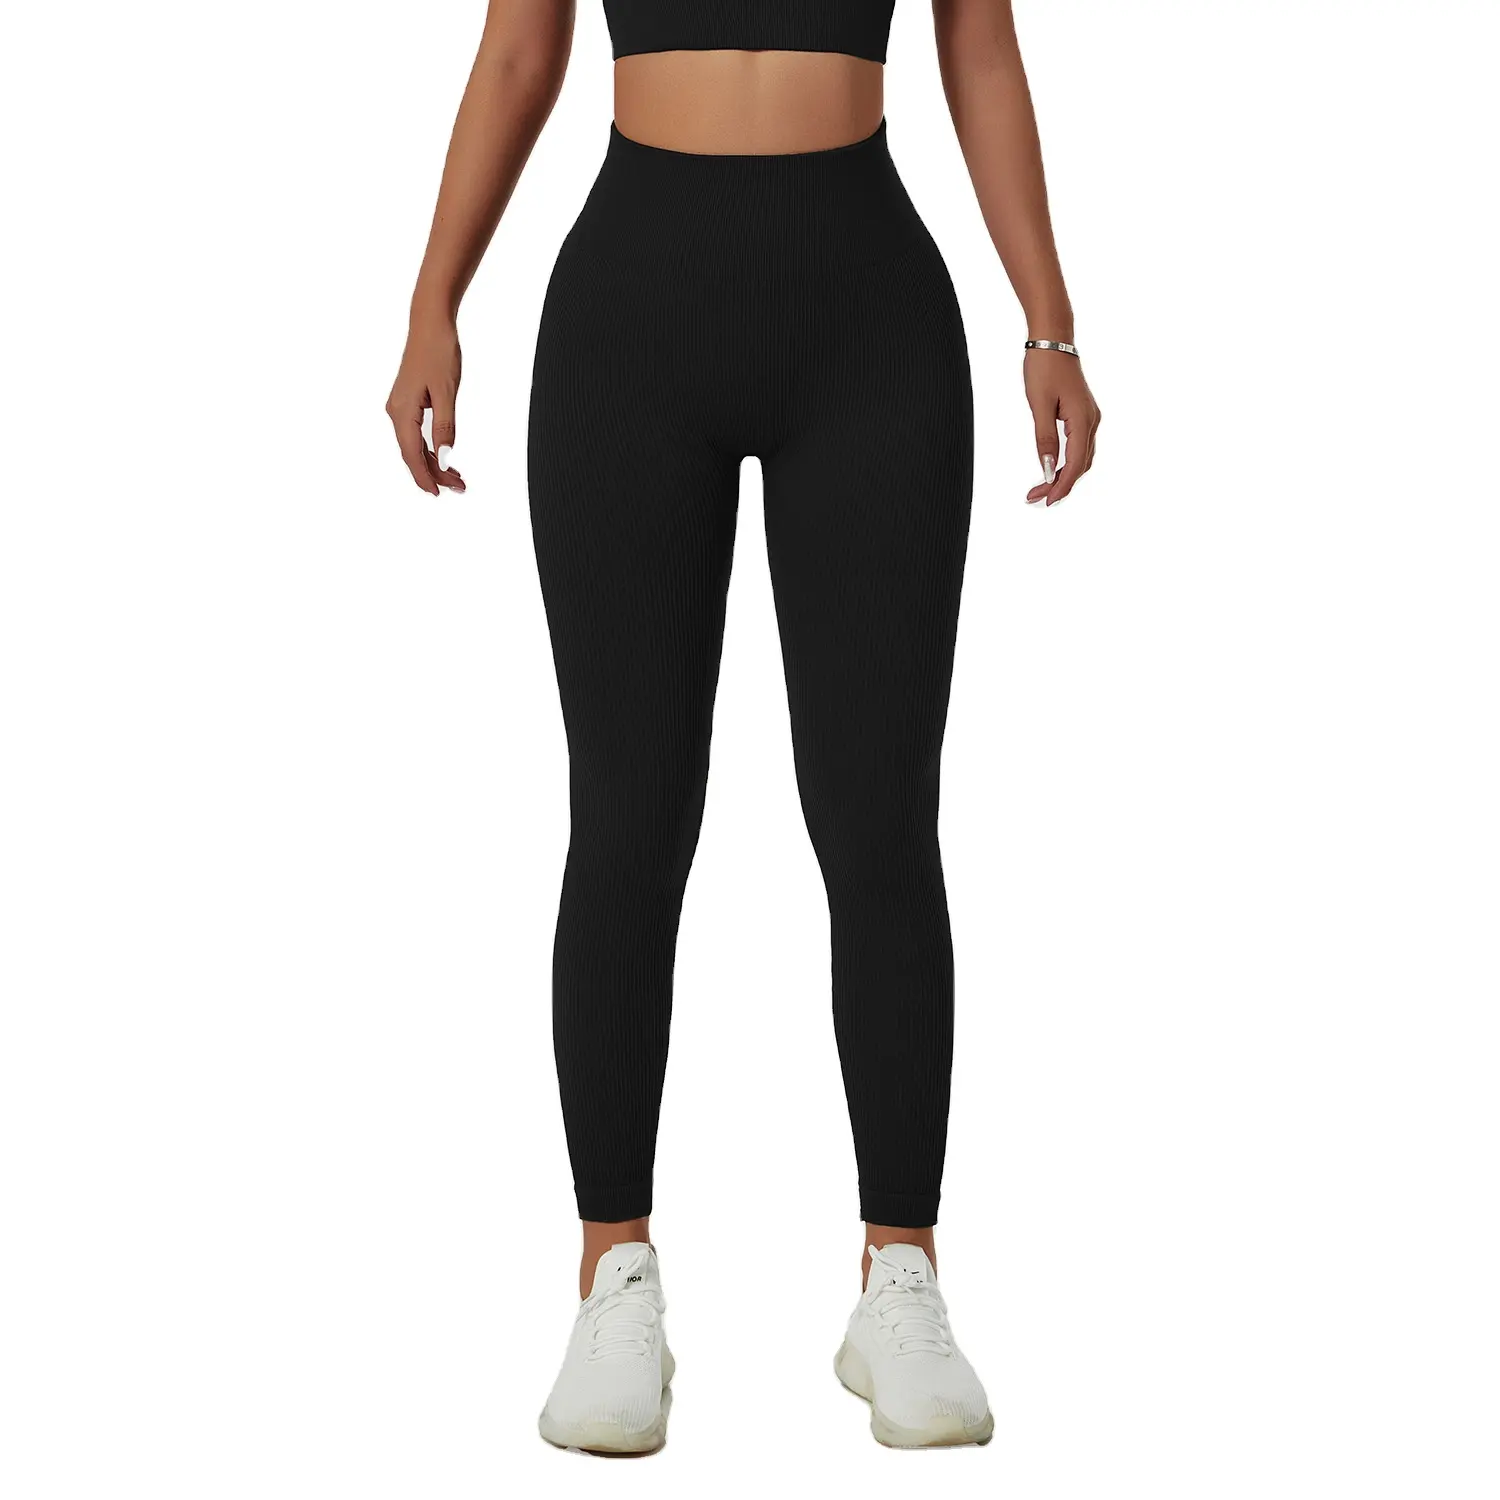 Pantaloni da Yoga senza cuciture Leggings Push Up per le donne Sport Fitness Yoga Legging a vita alta Leggins da allenamento attillati sportivi traspiranti